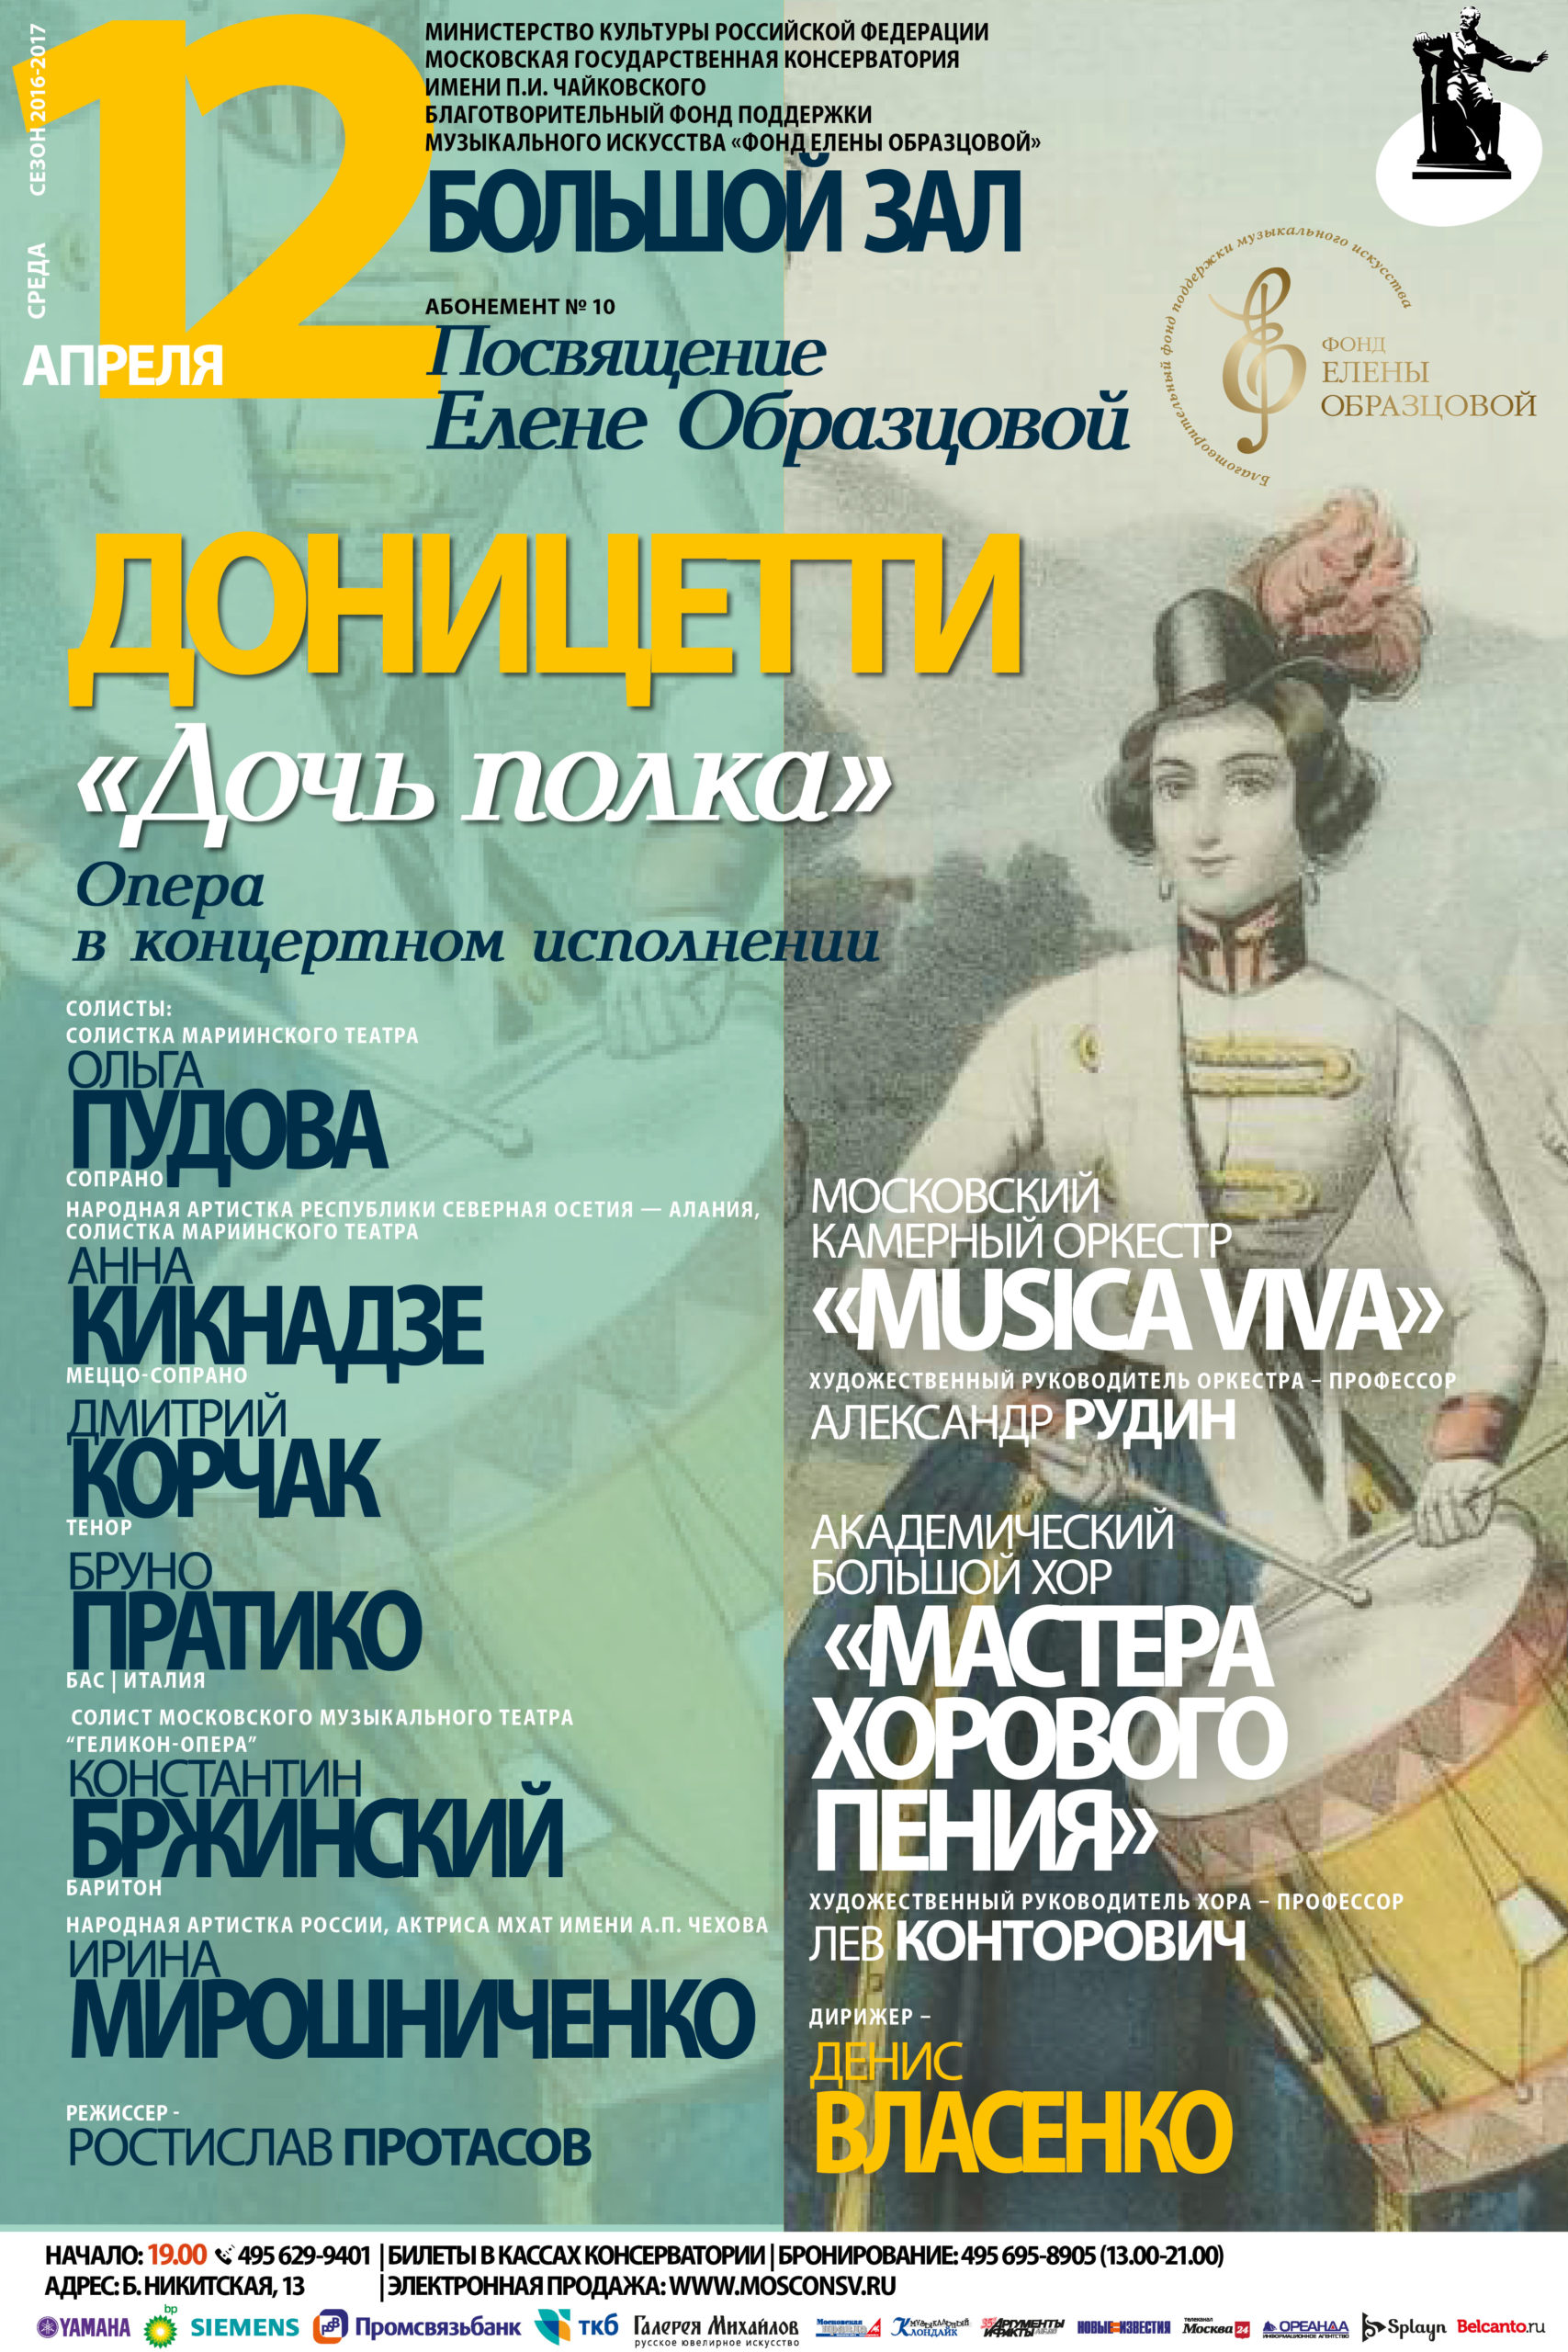 Благотворительный фонд Елены Образцовой при поддержке НФПП организует концертное исполнение оперы Г. Доницетти «Дочь полка»